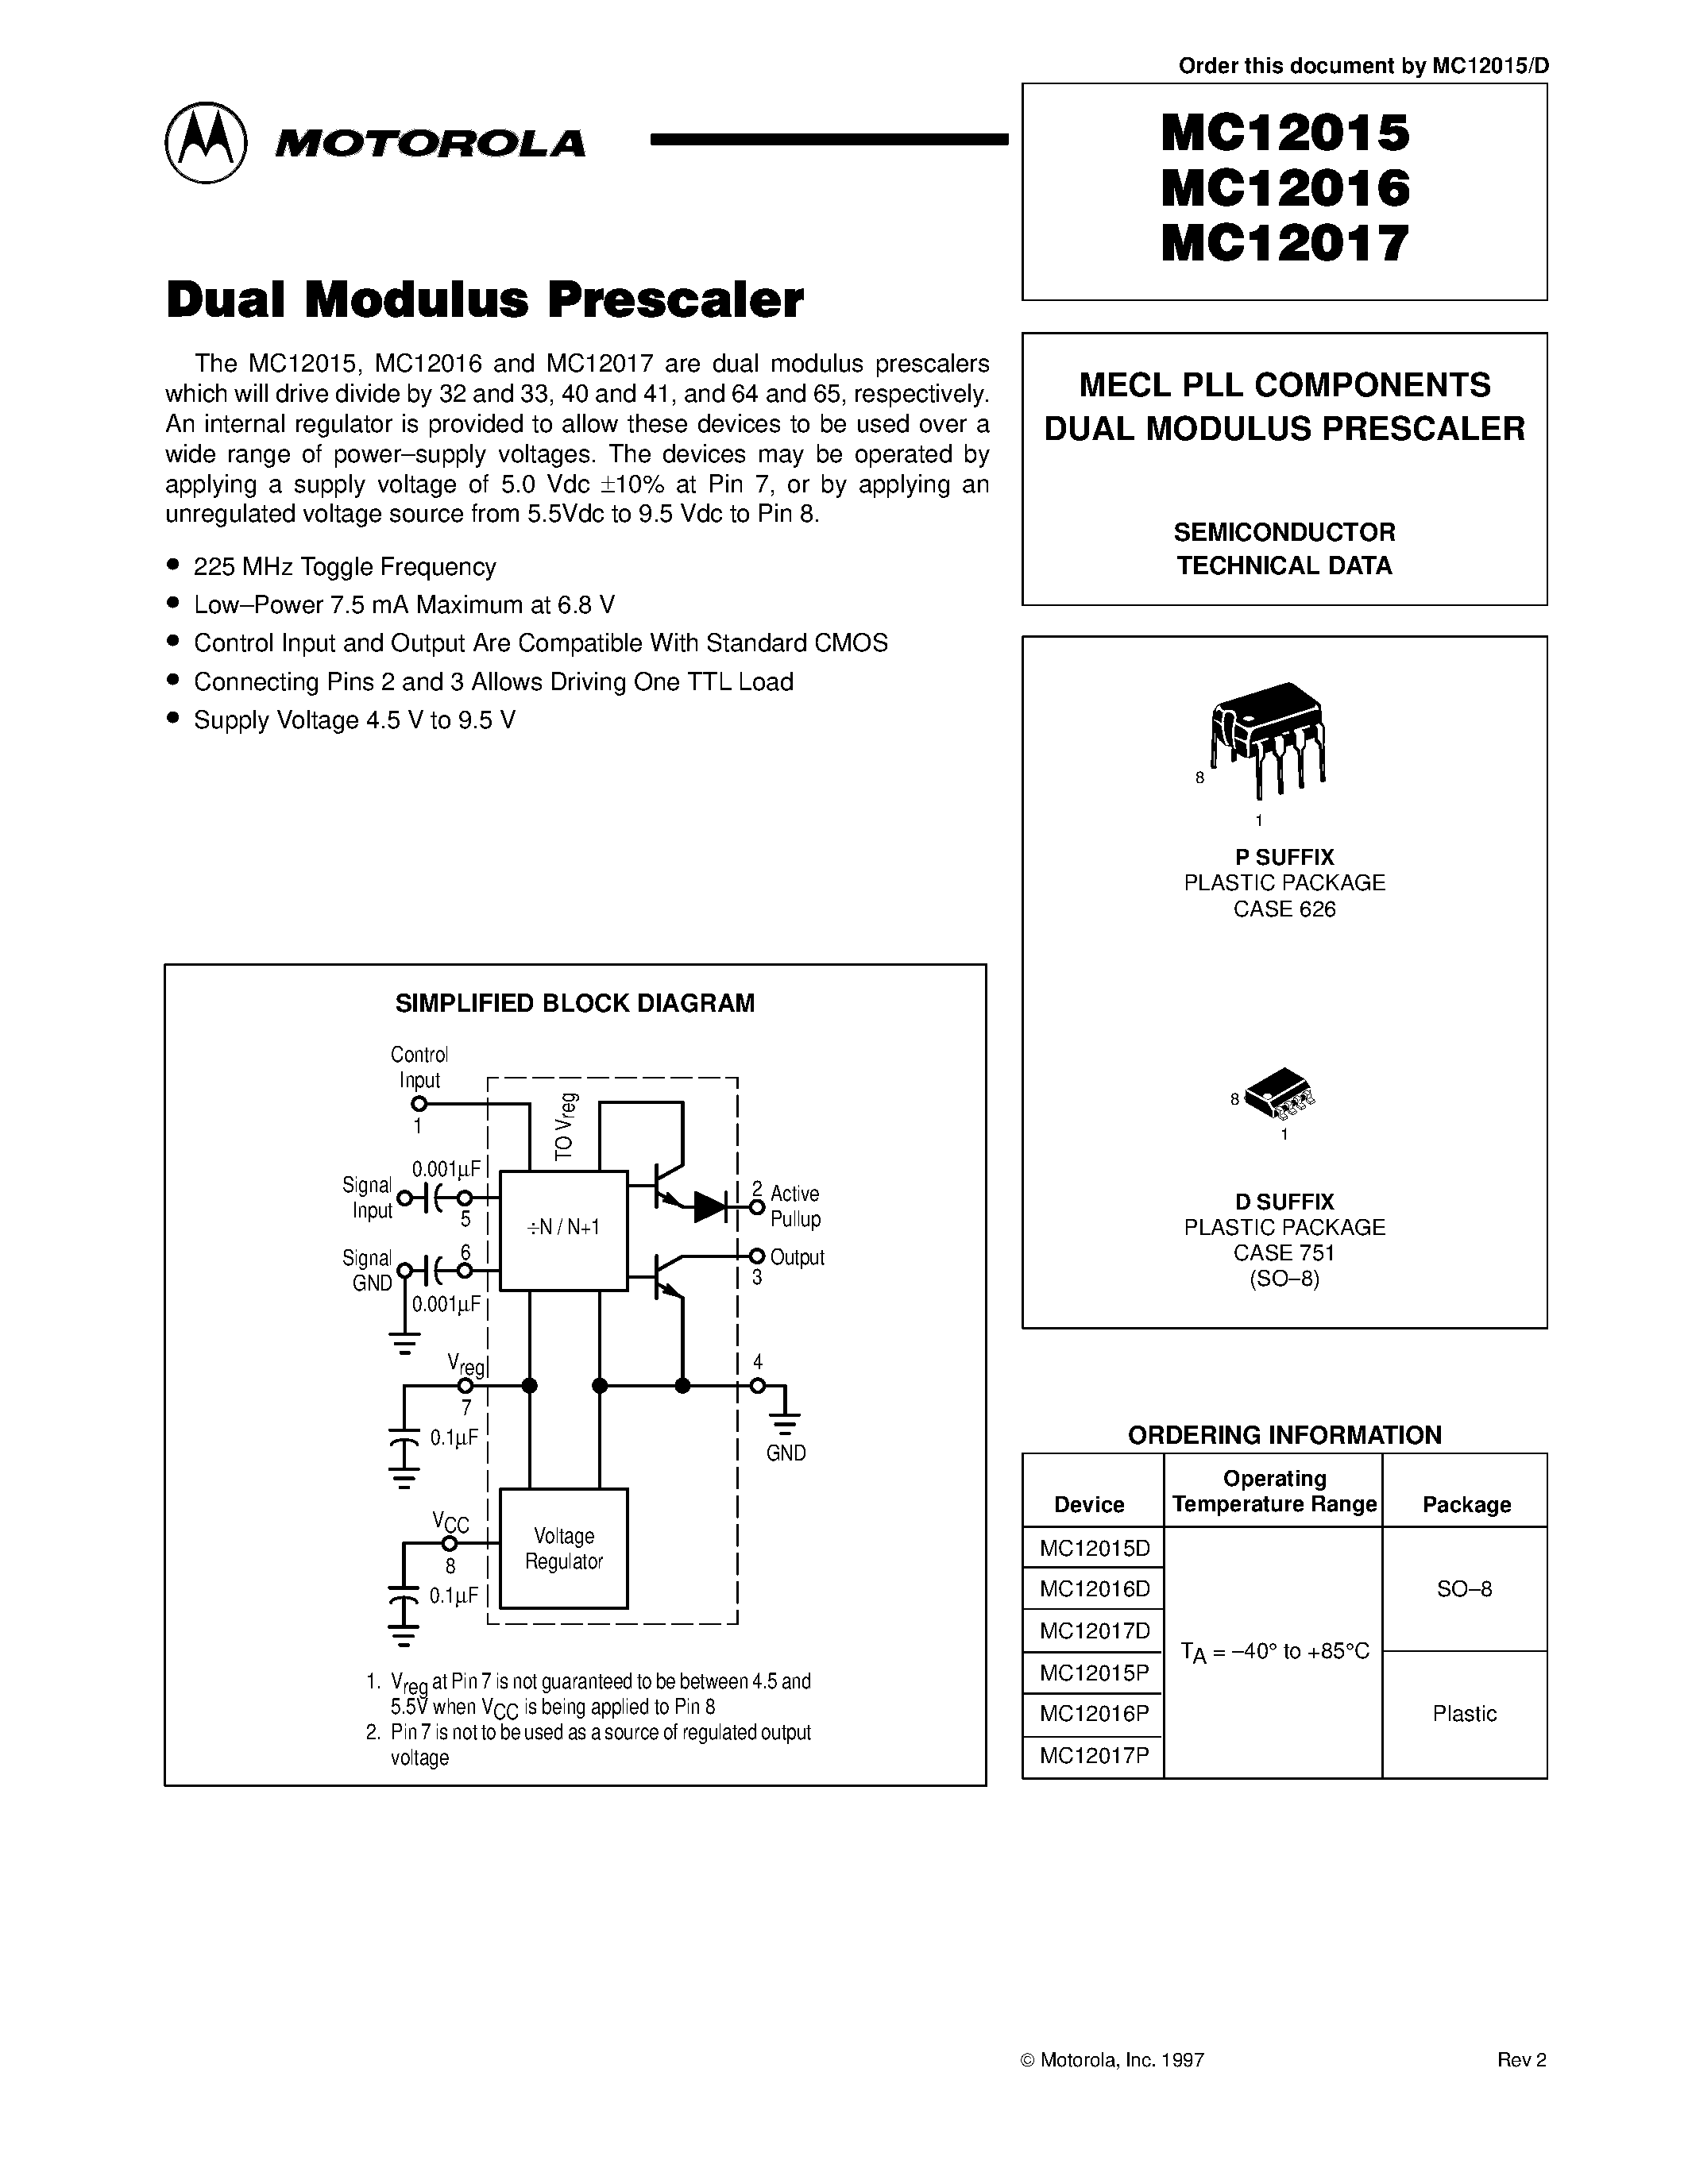 Datasheet MC12017D - MECL PLL COMPONENTS DUAL MODULUS PRESCALER page 1